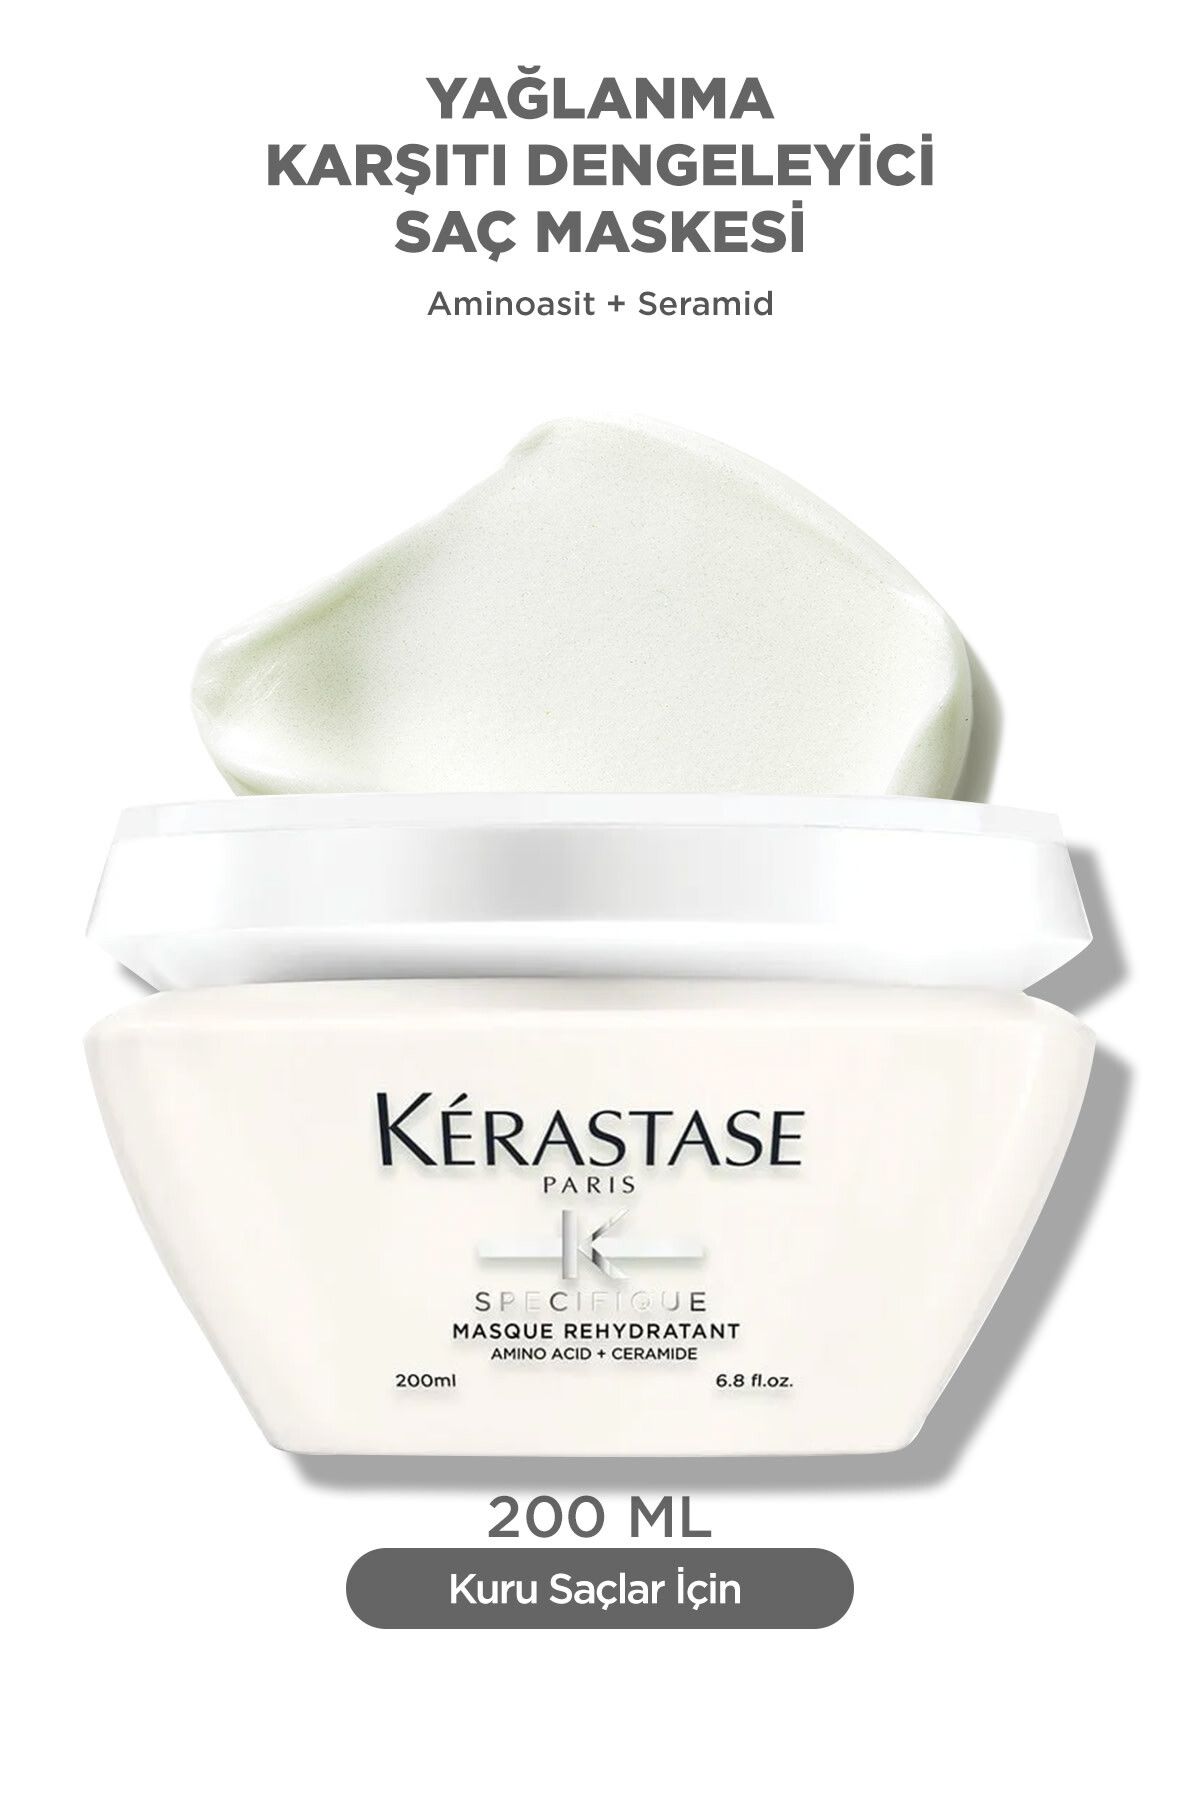 Kerastase Specifique Masque Rehydratant Yağlanma Karşıtı Dengeleyici Jel Yapılı Maske 200 ml